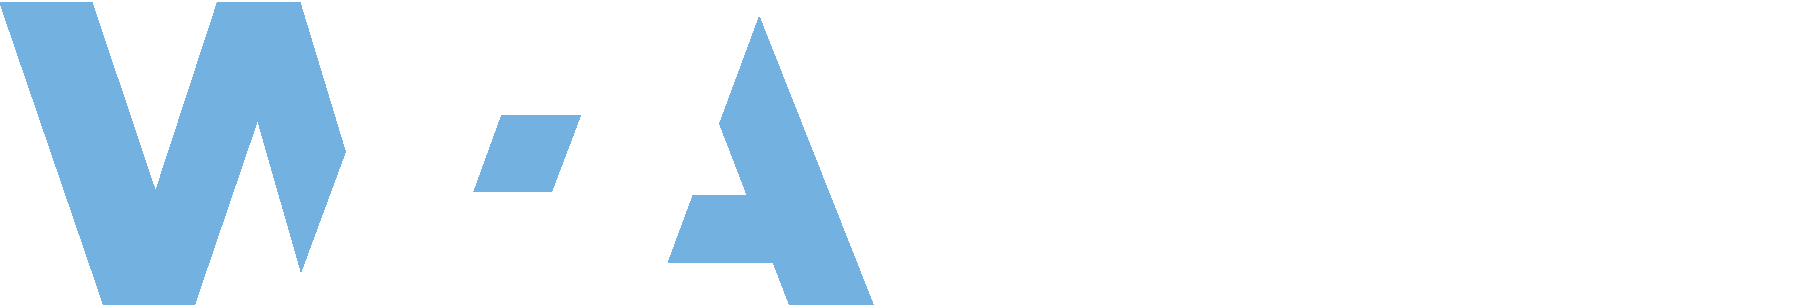 Washington Health Alliance Logo